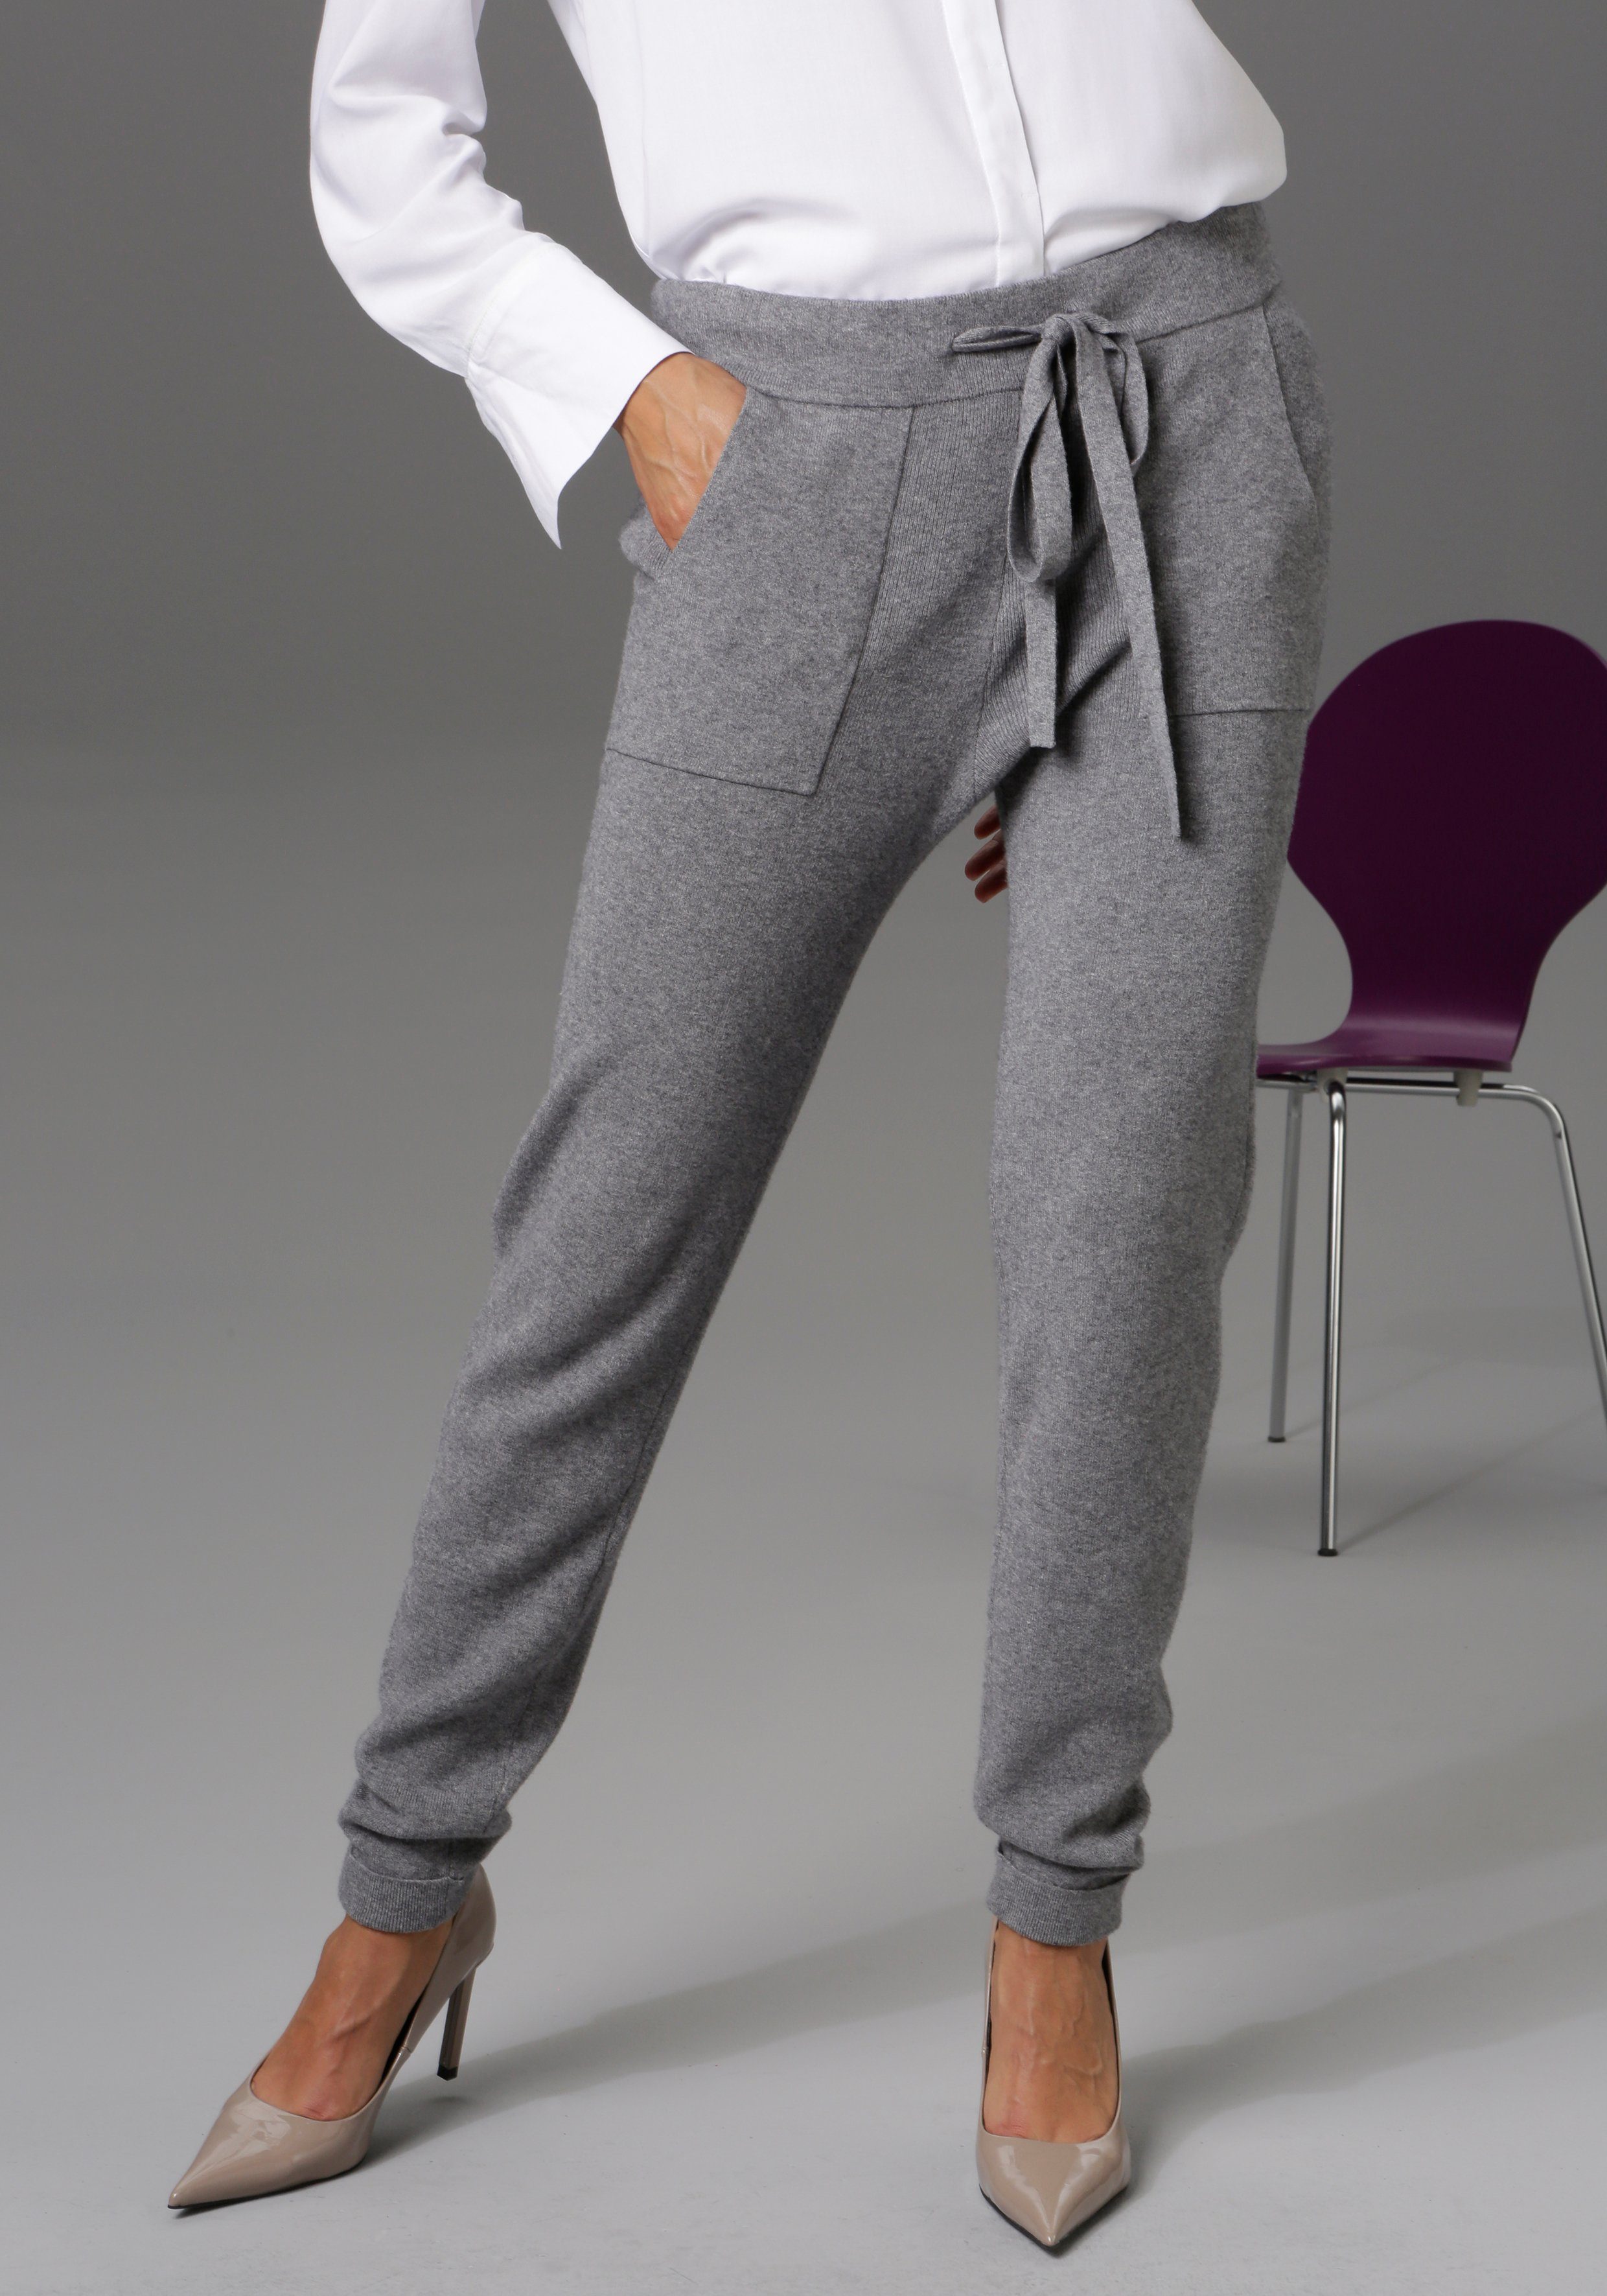 CASUAL grau-meliert aufgesetzten Aniston mit Taschen Strickhose 2